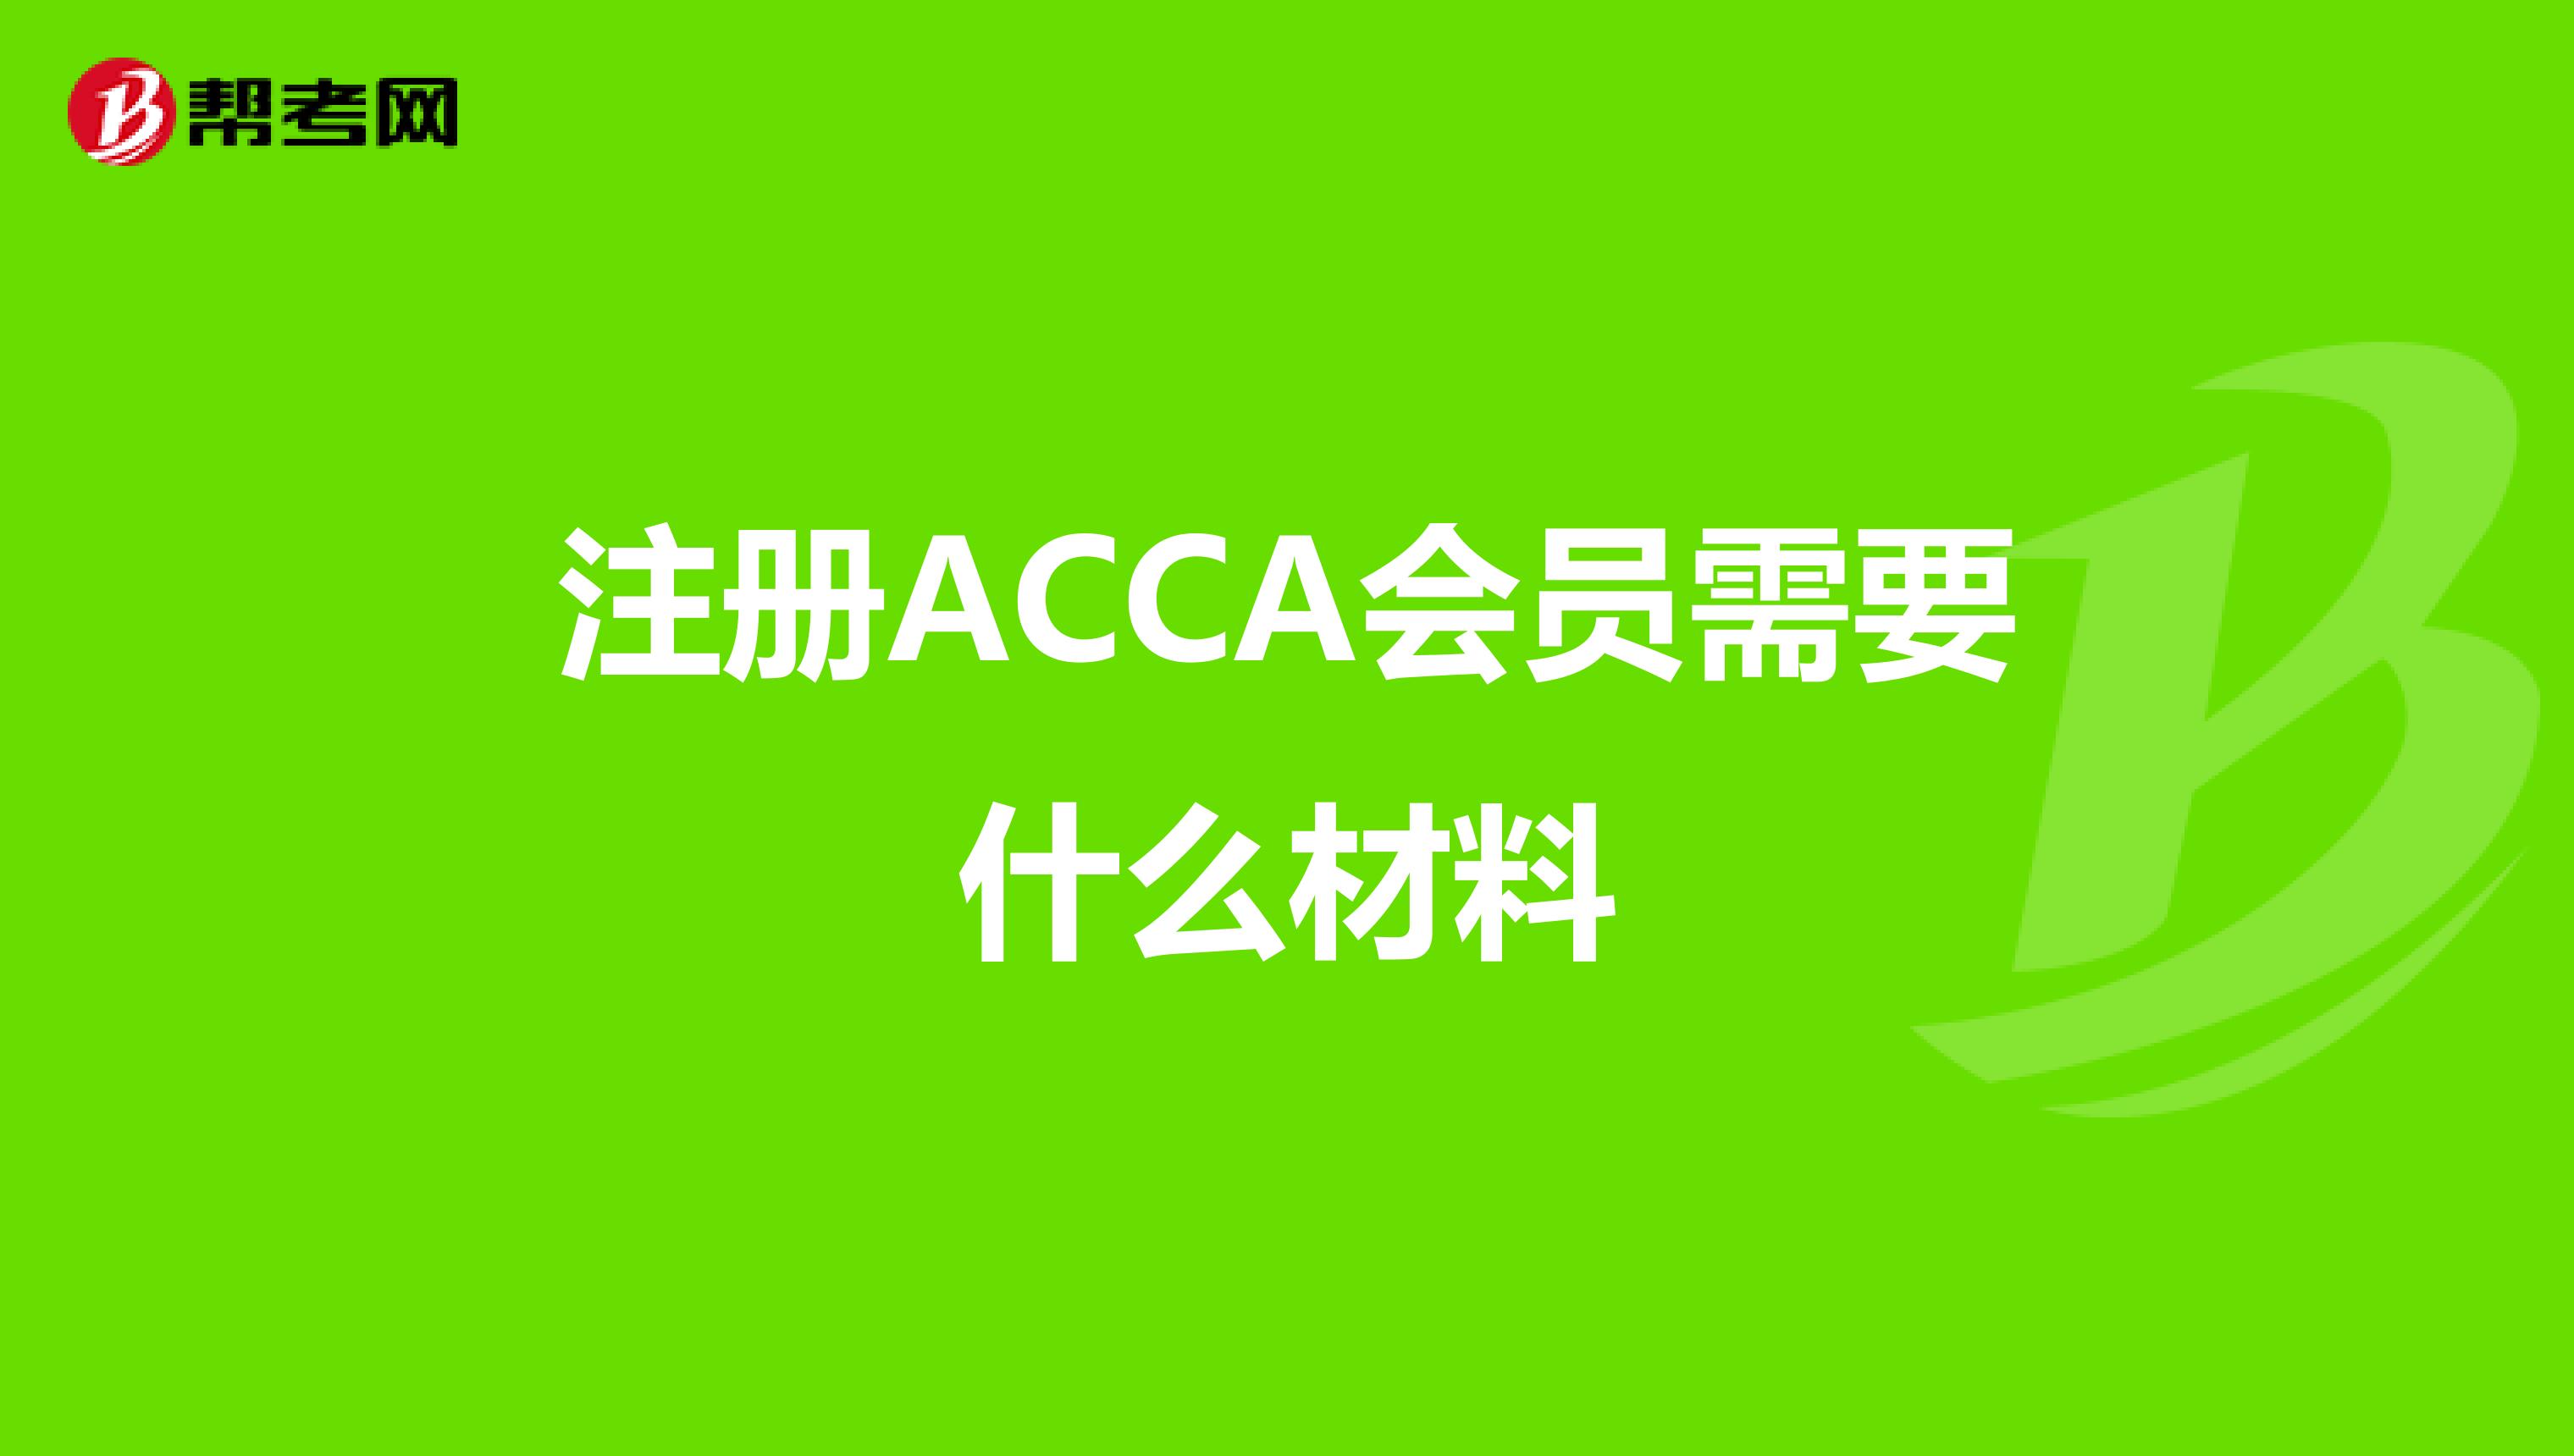 注册ACCA会员需要什么材料